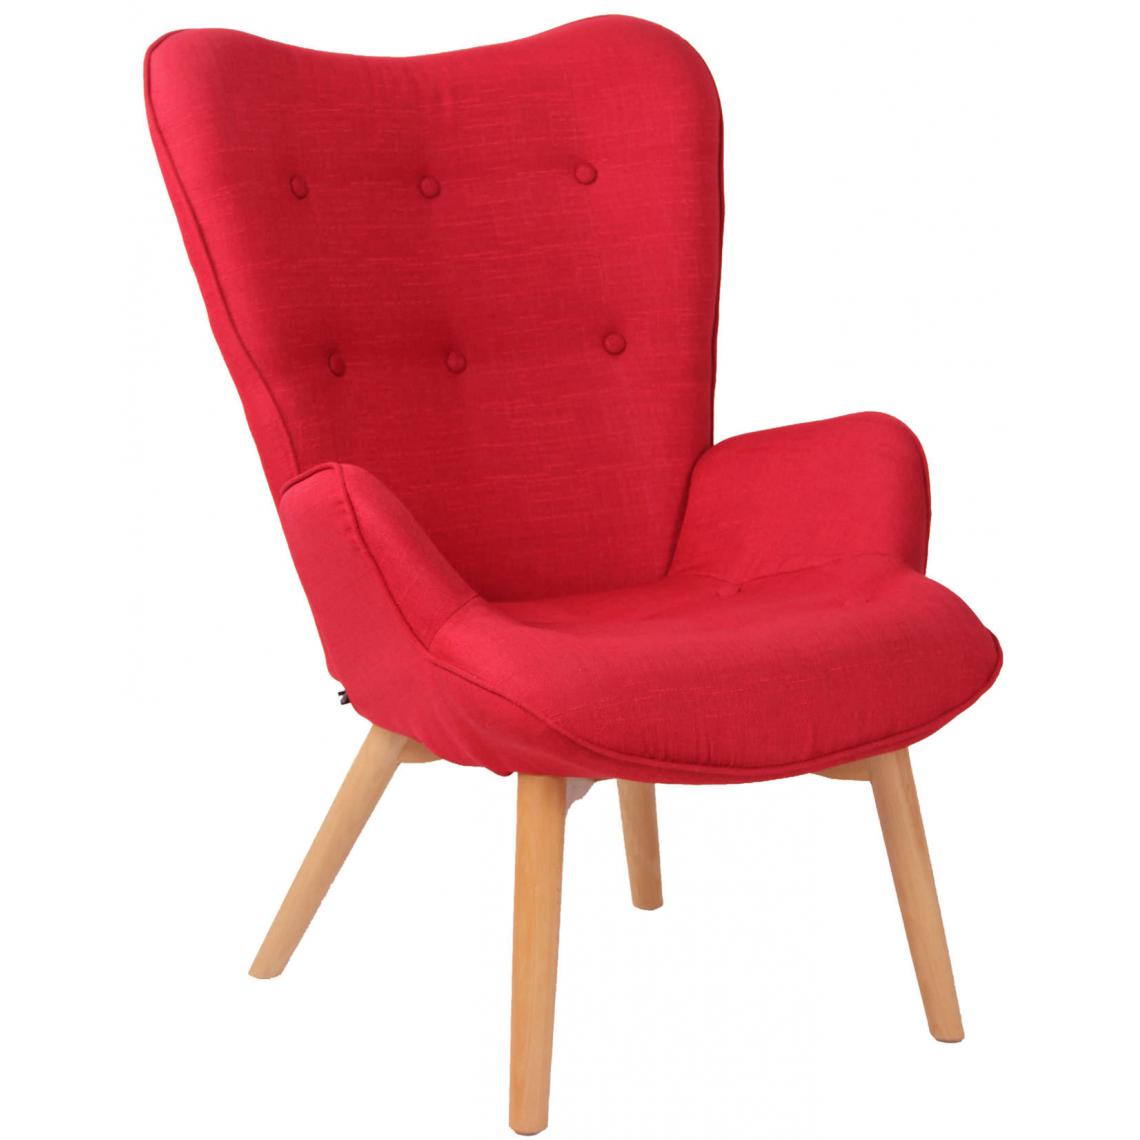 Icaverne - Chic Chaise longue en tissu Quito couleur rouge - Chaises